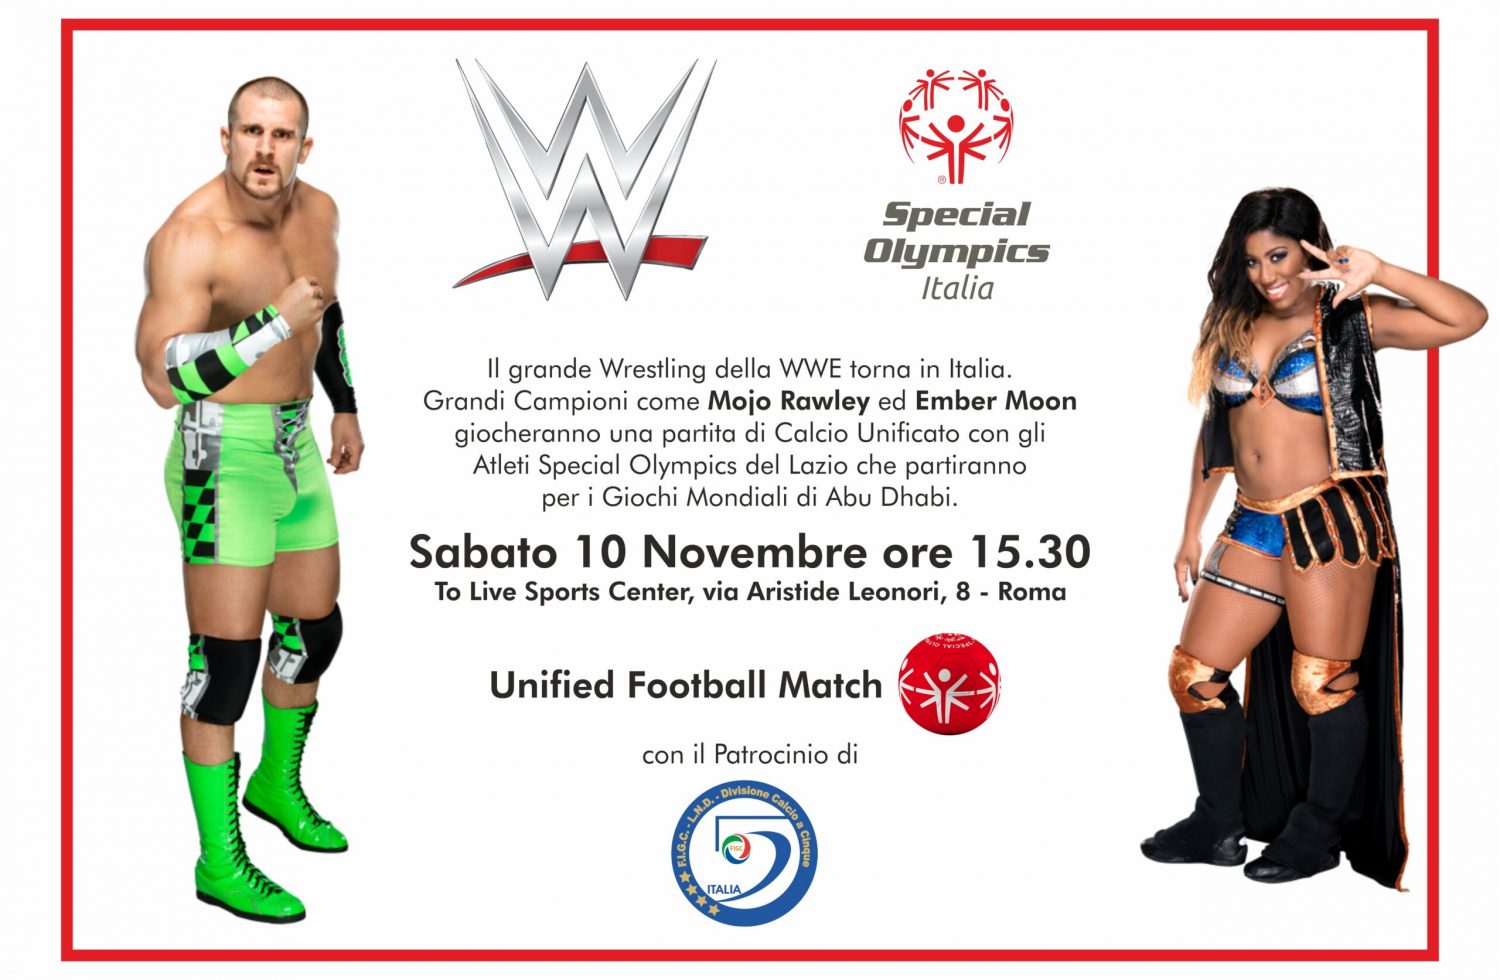 Campioni del Wrestling della WWE in campo con gli Atleti Special Olympics per una partita di Calcio Unificato